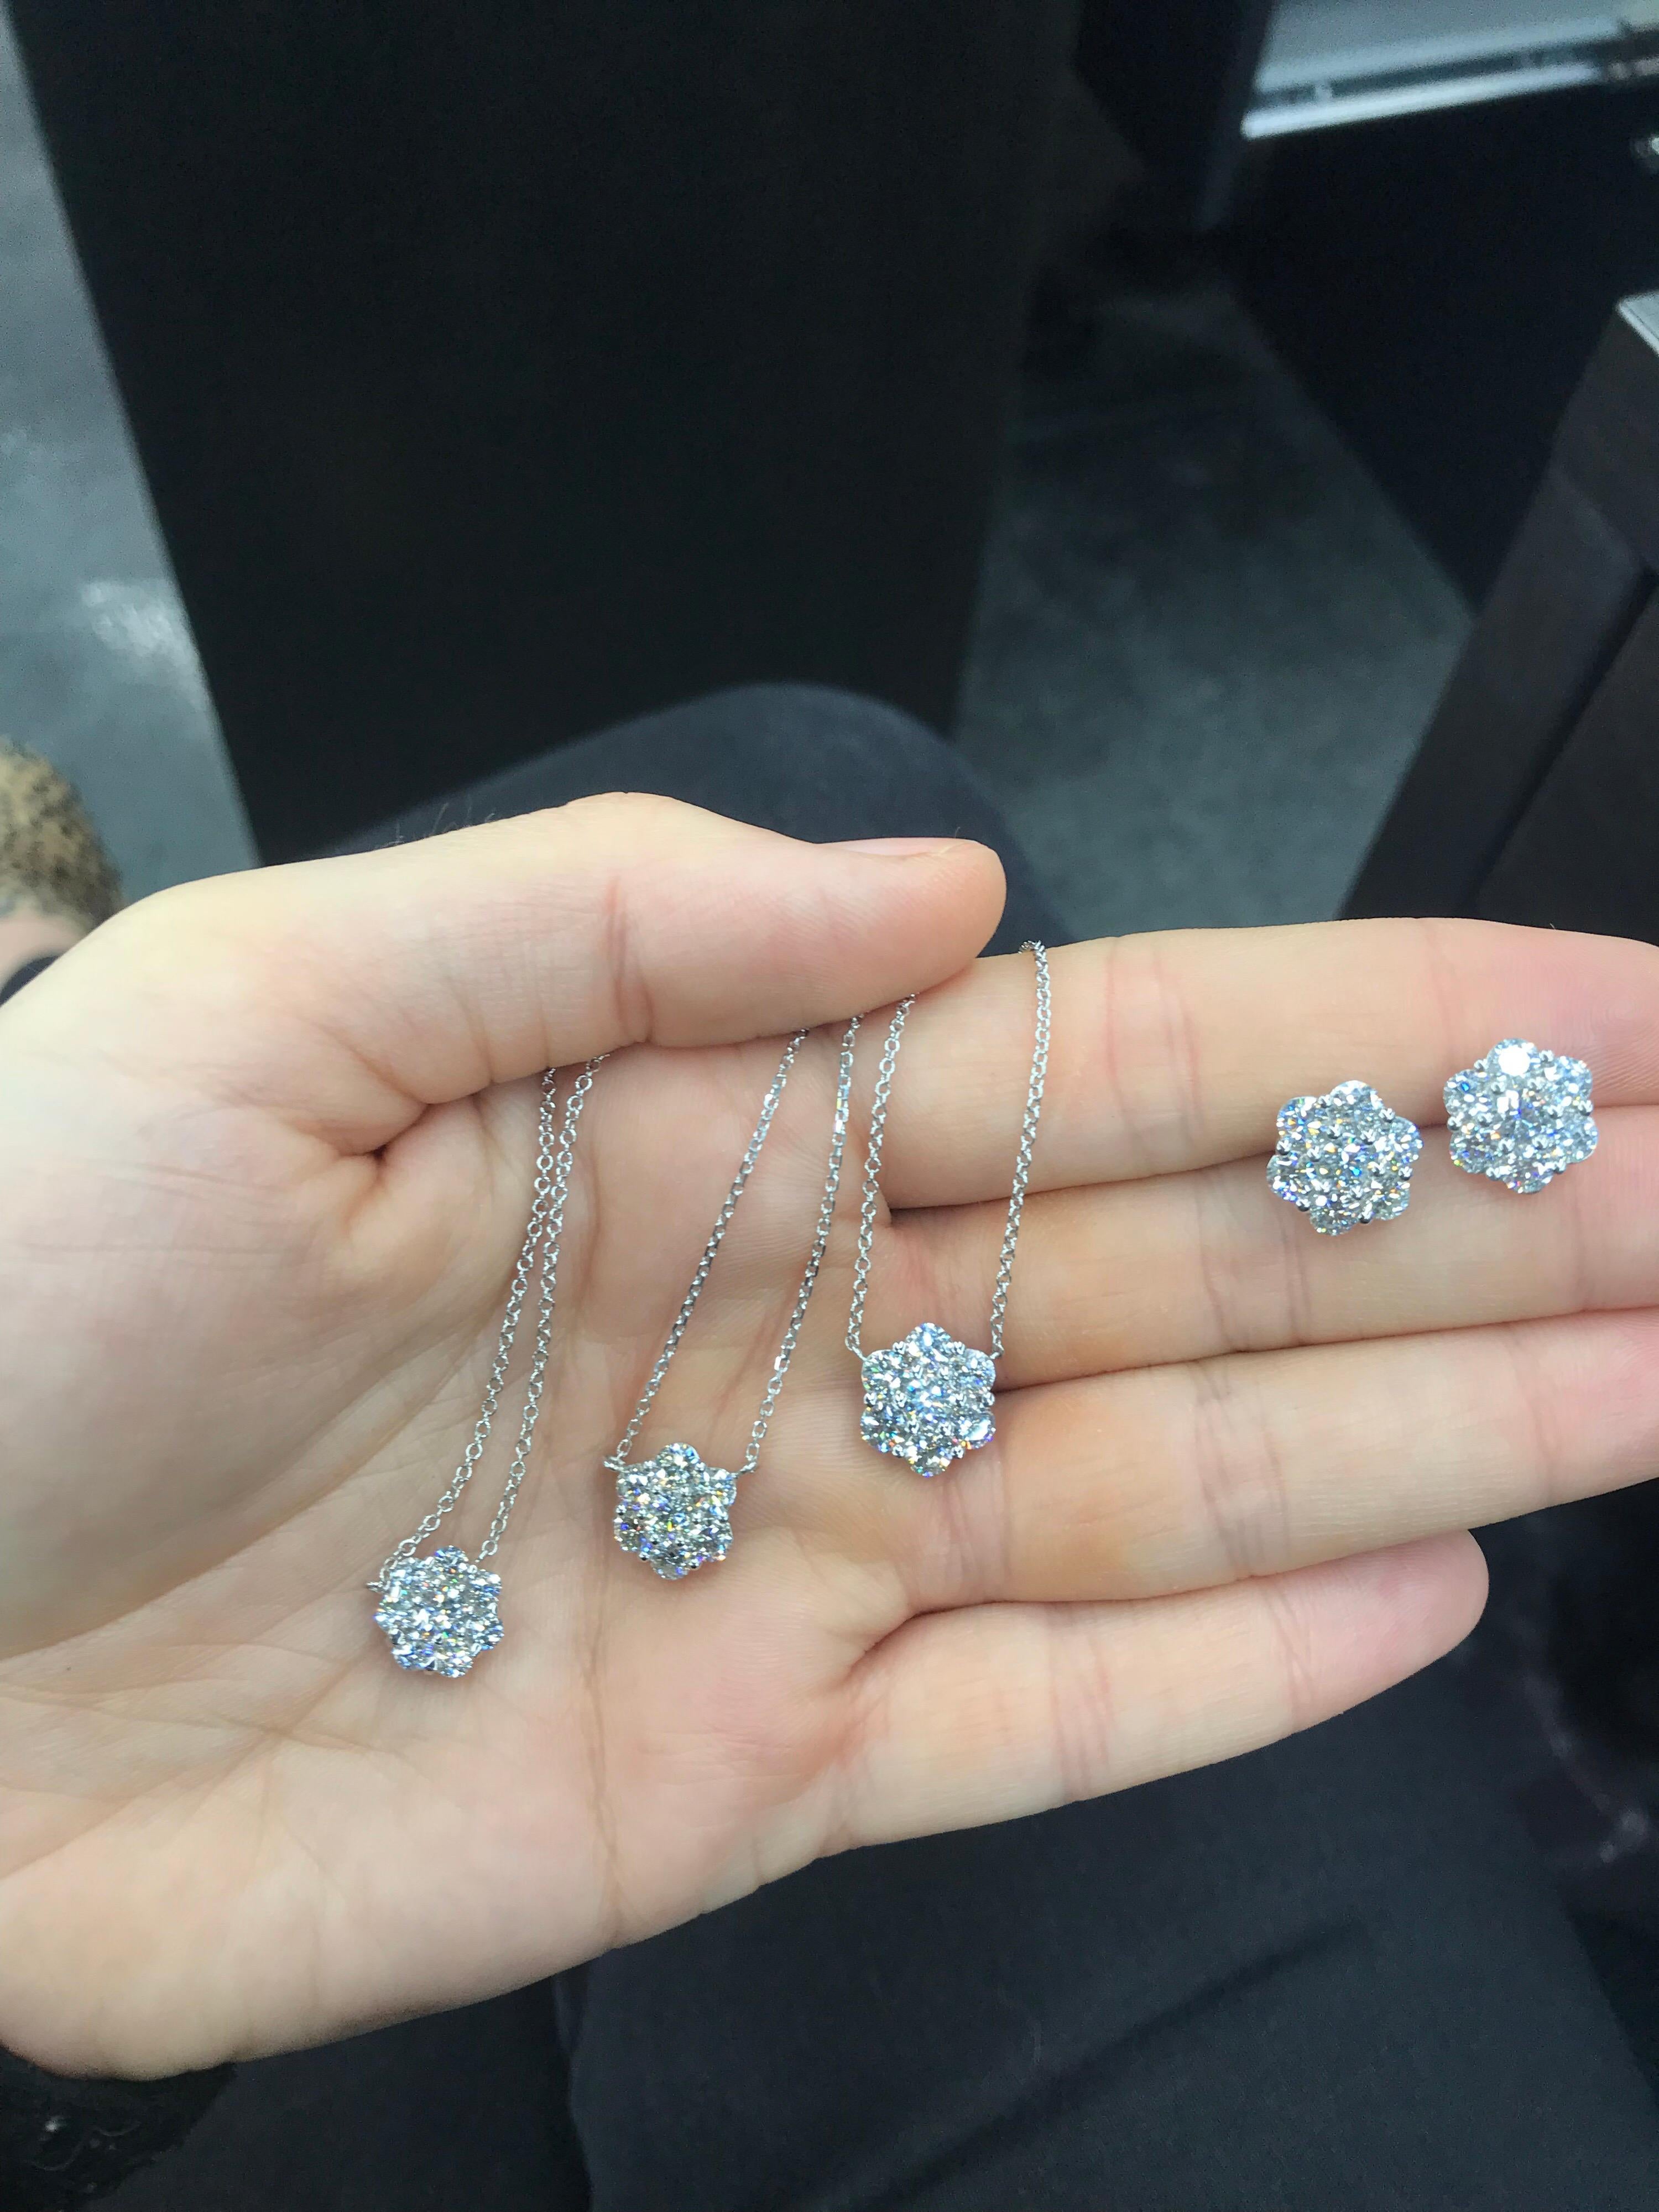 Women's Diamond Cluster Floral Pendant Necklace 0.96 Carat 18 Karat White Gold